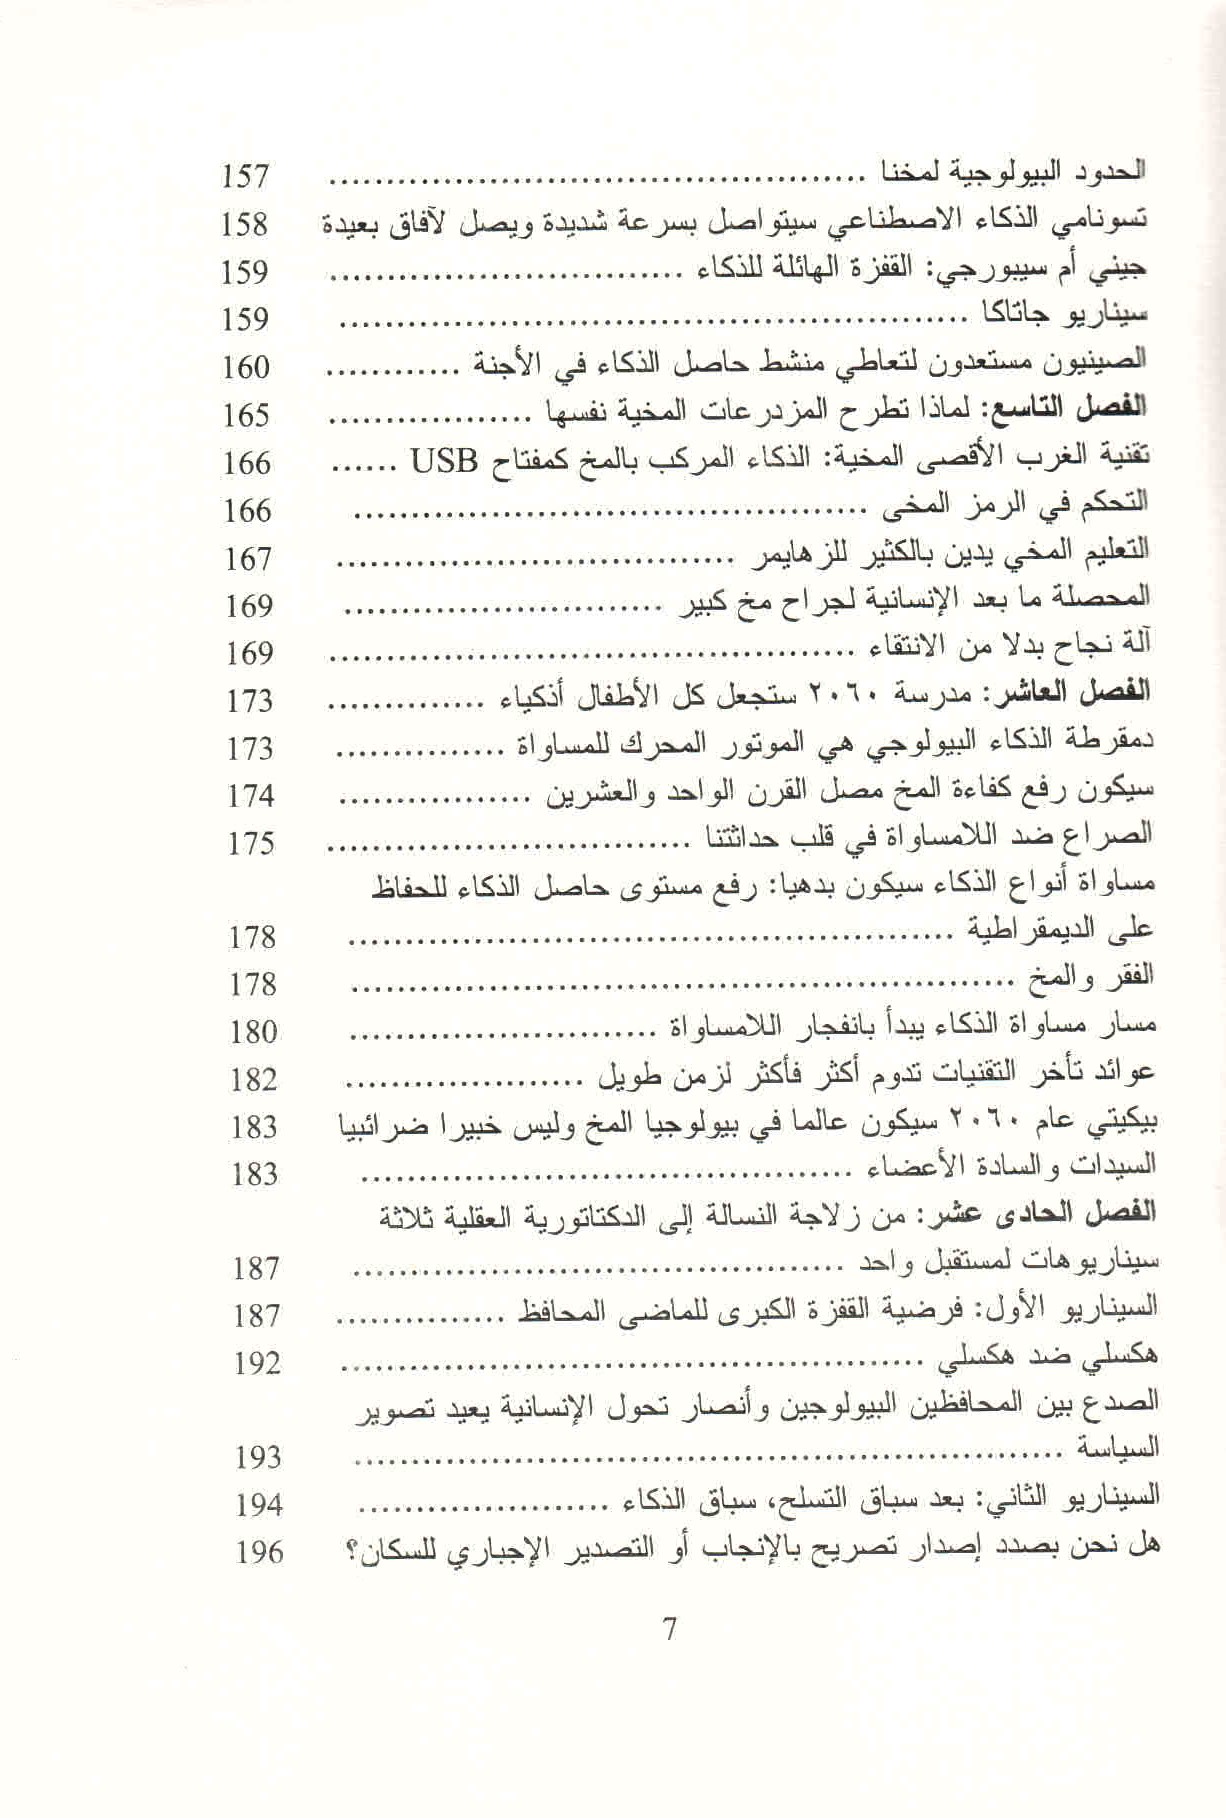 ص. 7 قائمة محتويات كتاب حرب الذكاء.